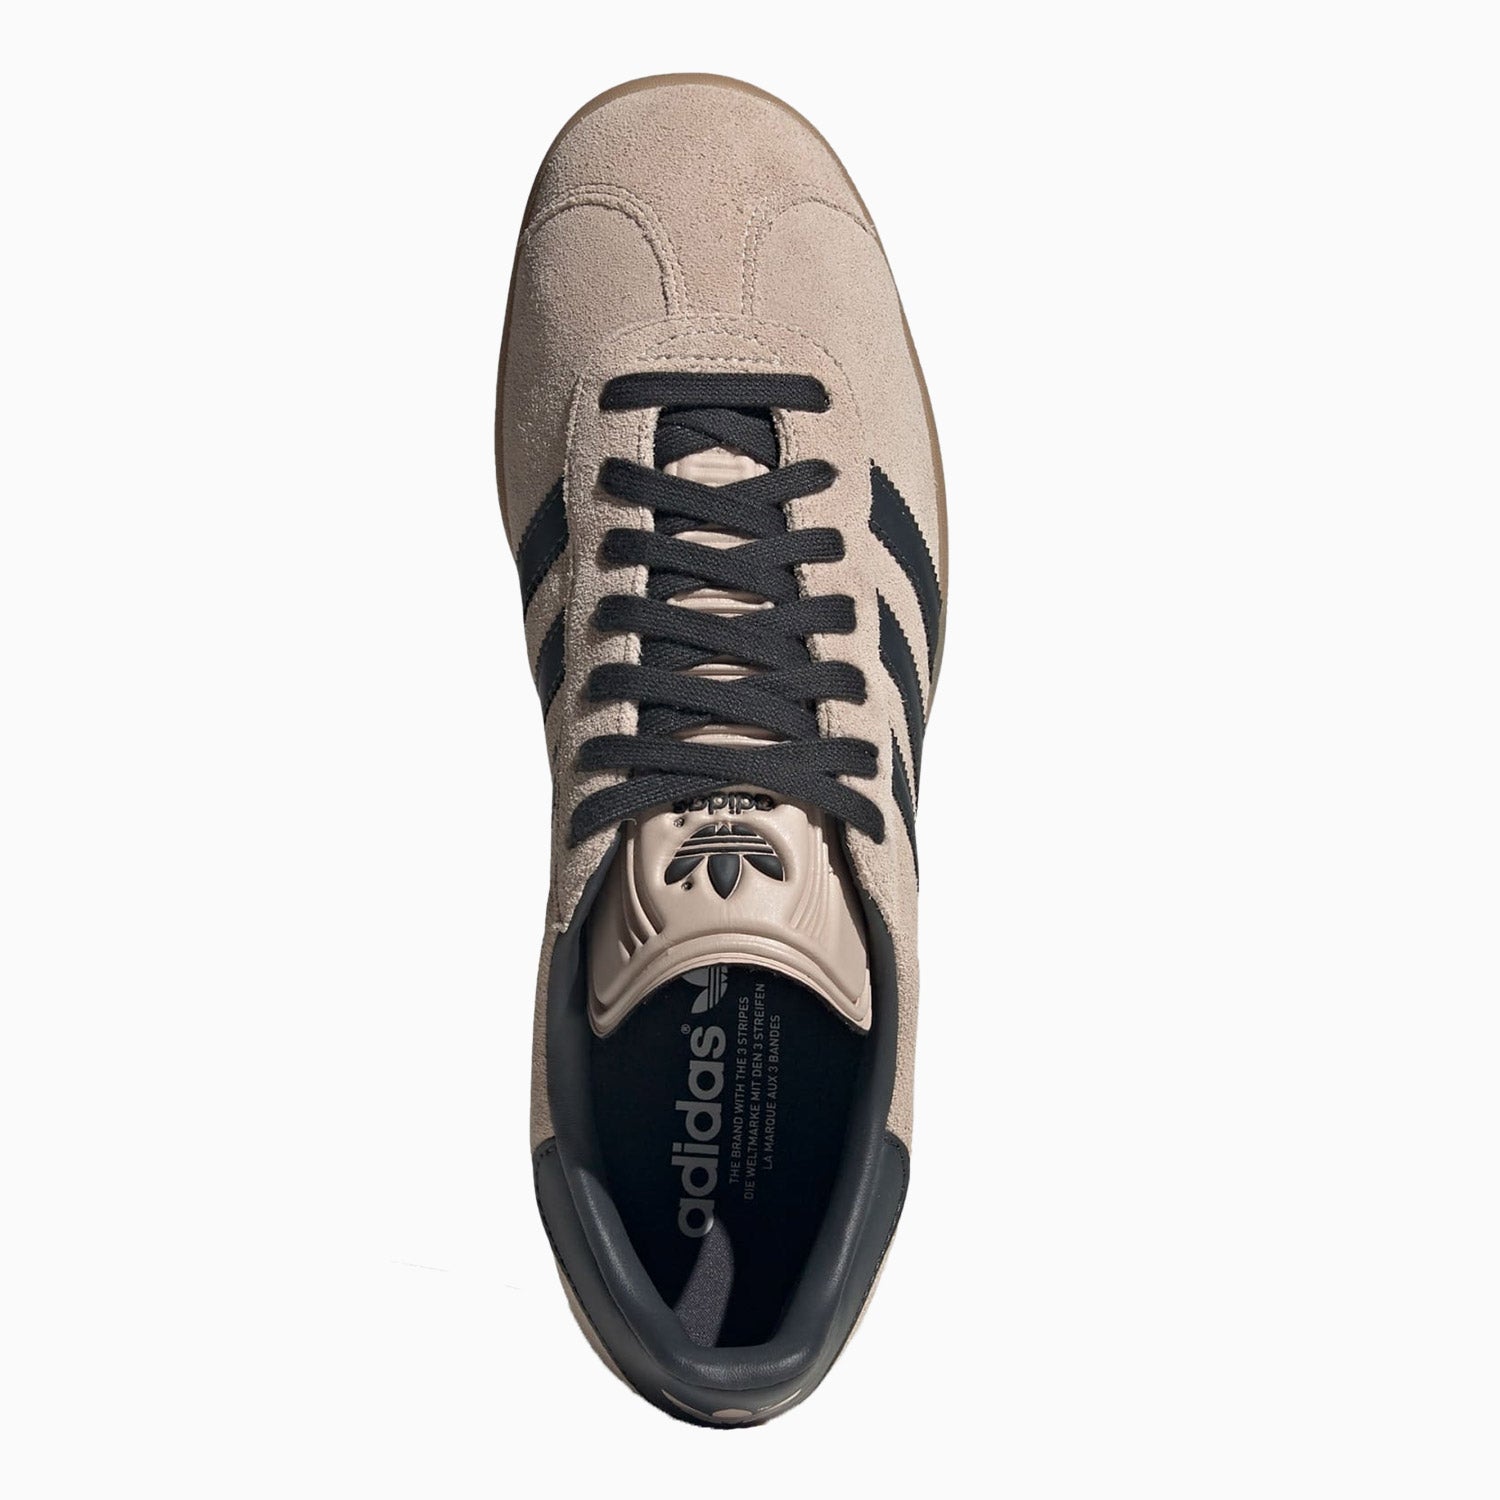 adidas-mens-originals-gazelle-shoes-ig6199